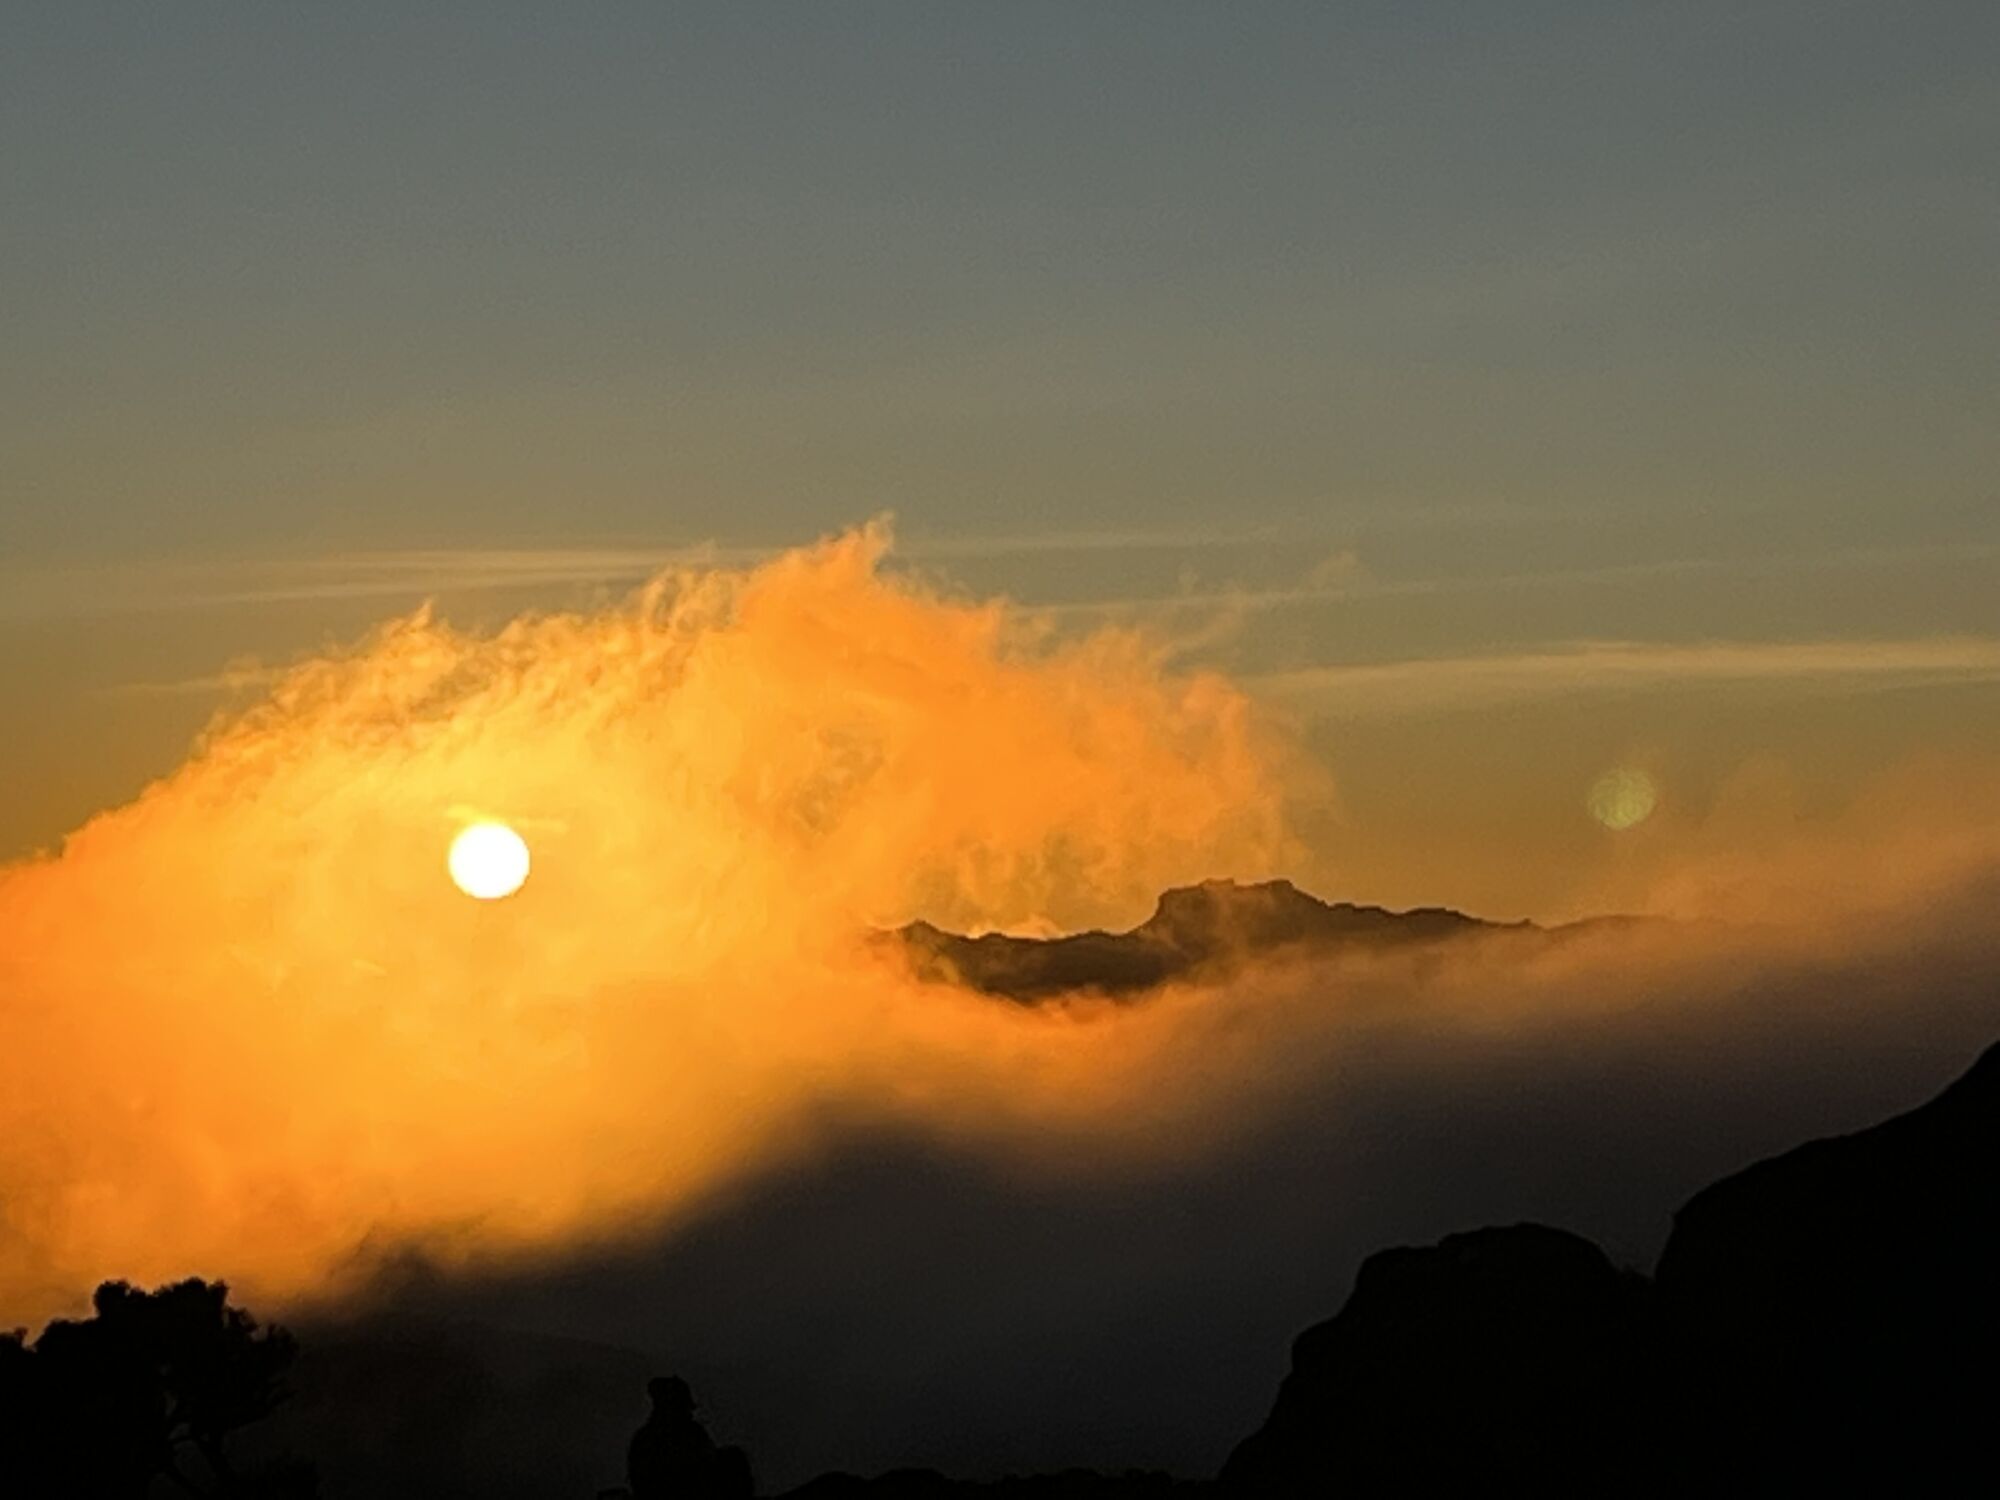 The sun illuminates clouds shrouding mountain peaks 